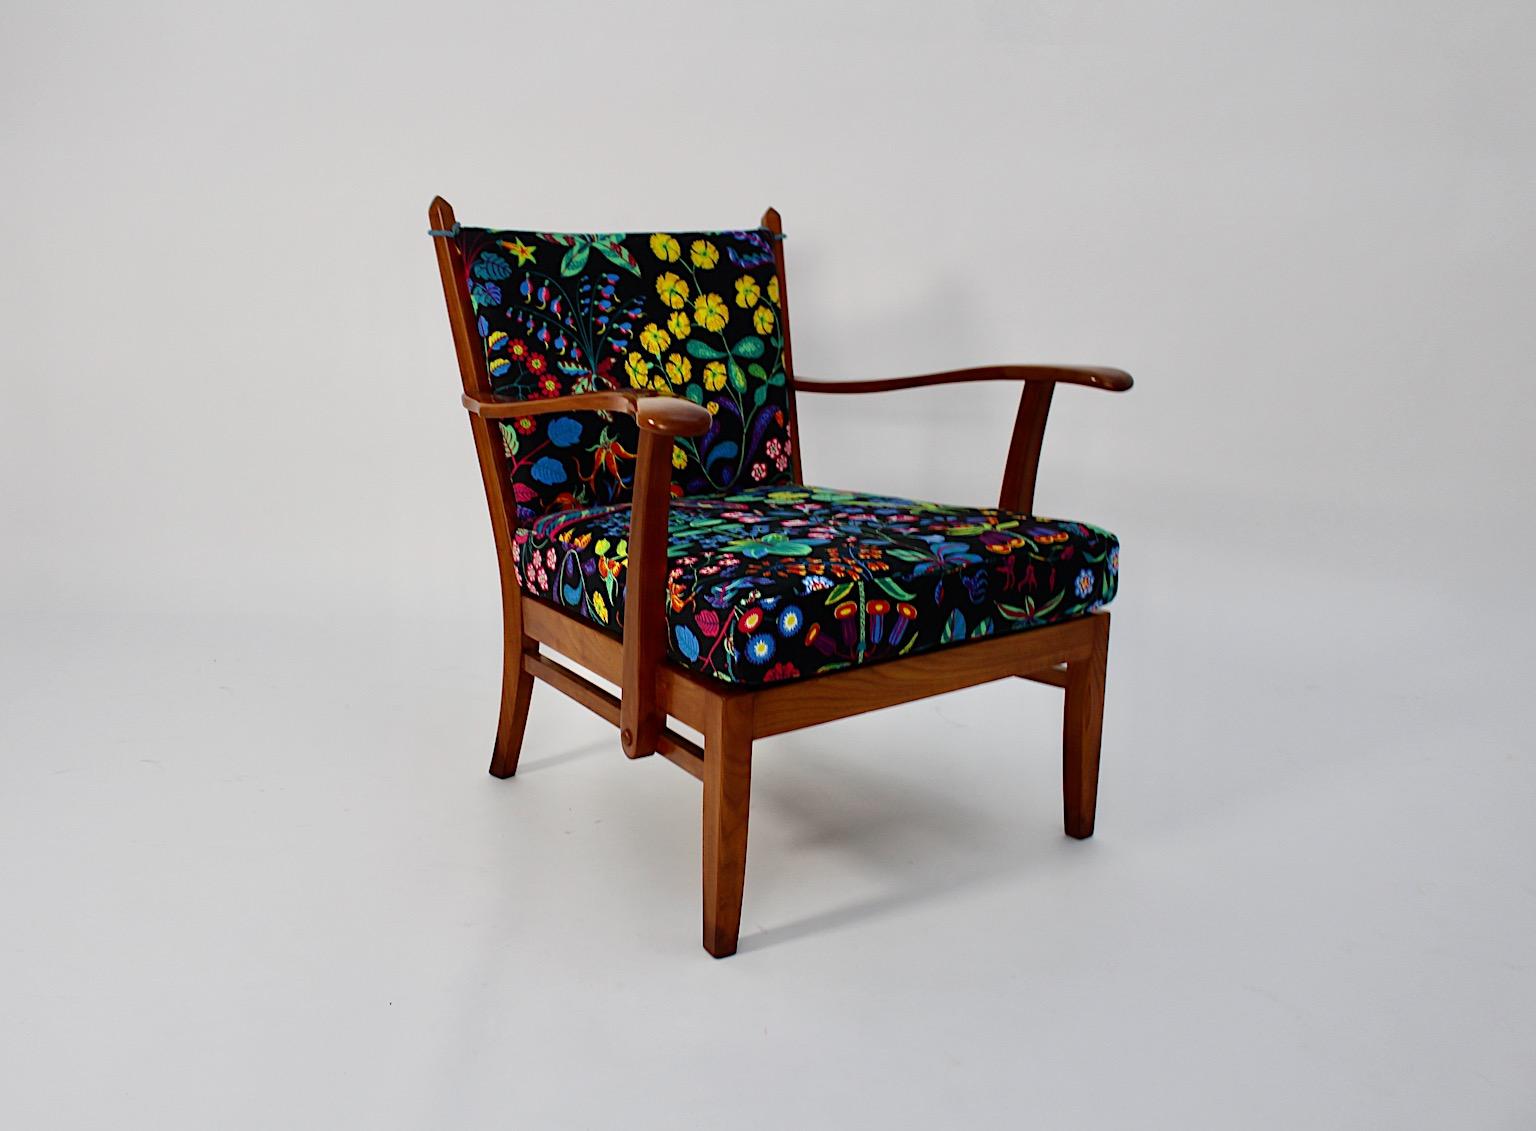 Art Deco vintage fauteuil en cerisier attribué à Josef Frank circa 1925 Autriche.
Un magnifique fauteuil confortable en bois de cerisier massif avec de nouveaux coussins en vrac faits à la main et attribués au designer Josef Frank.
Ce fauteuil